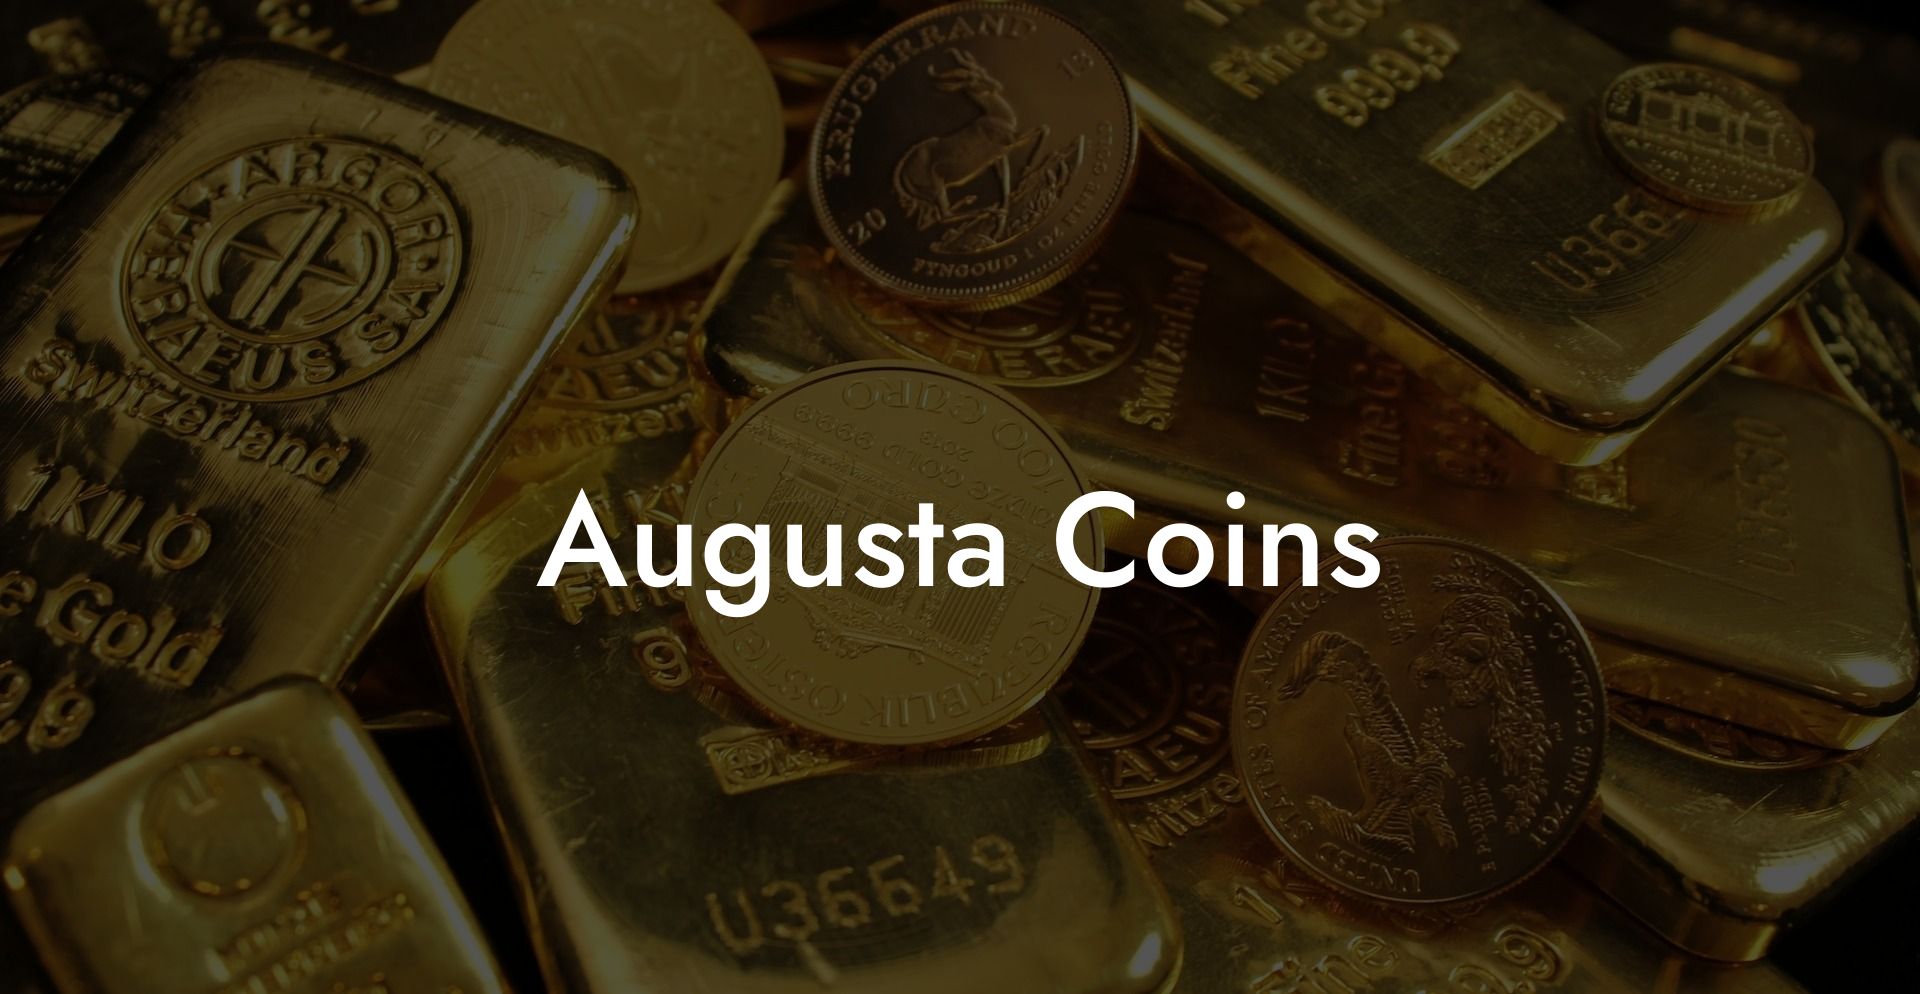 Augusta Coins